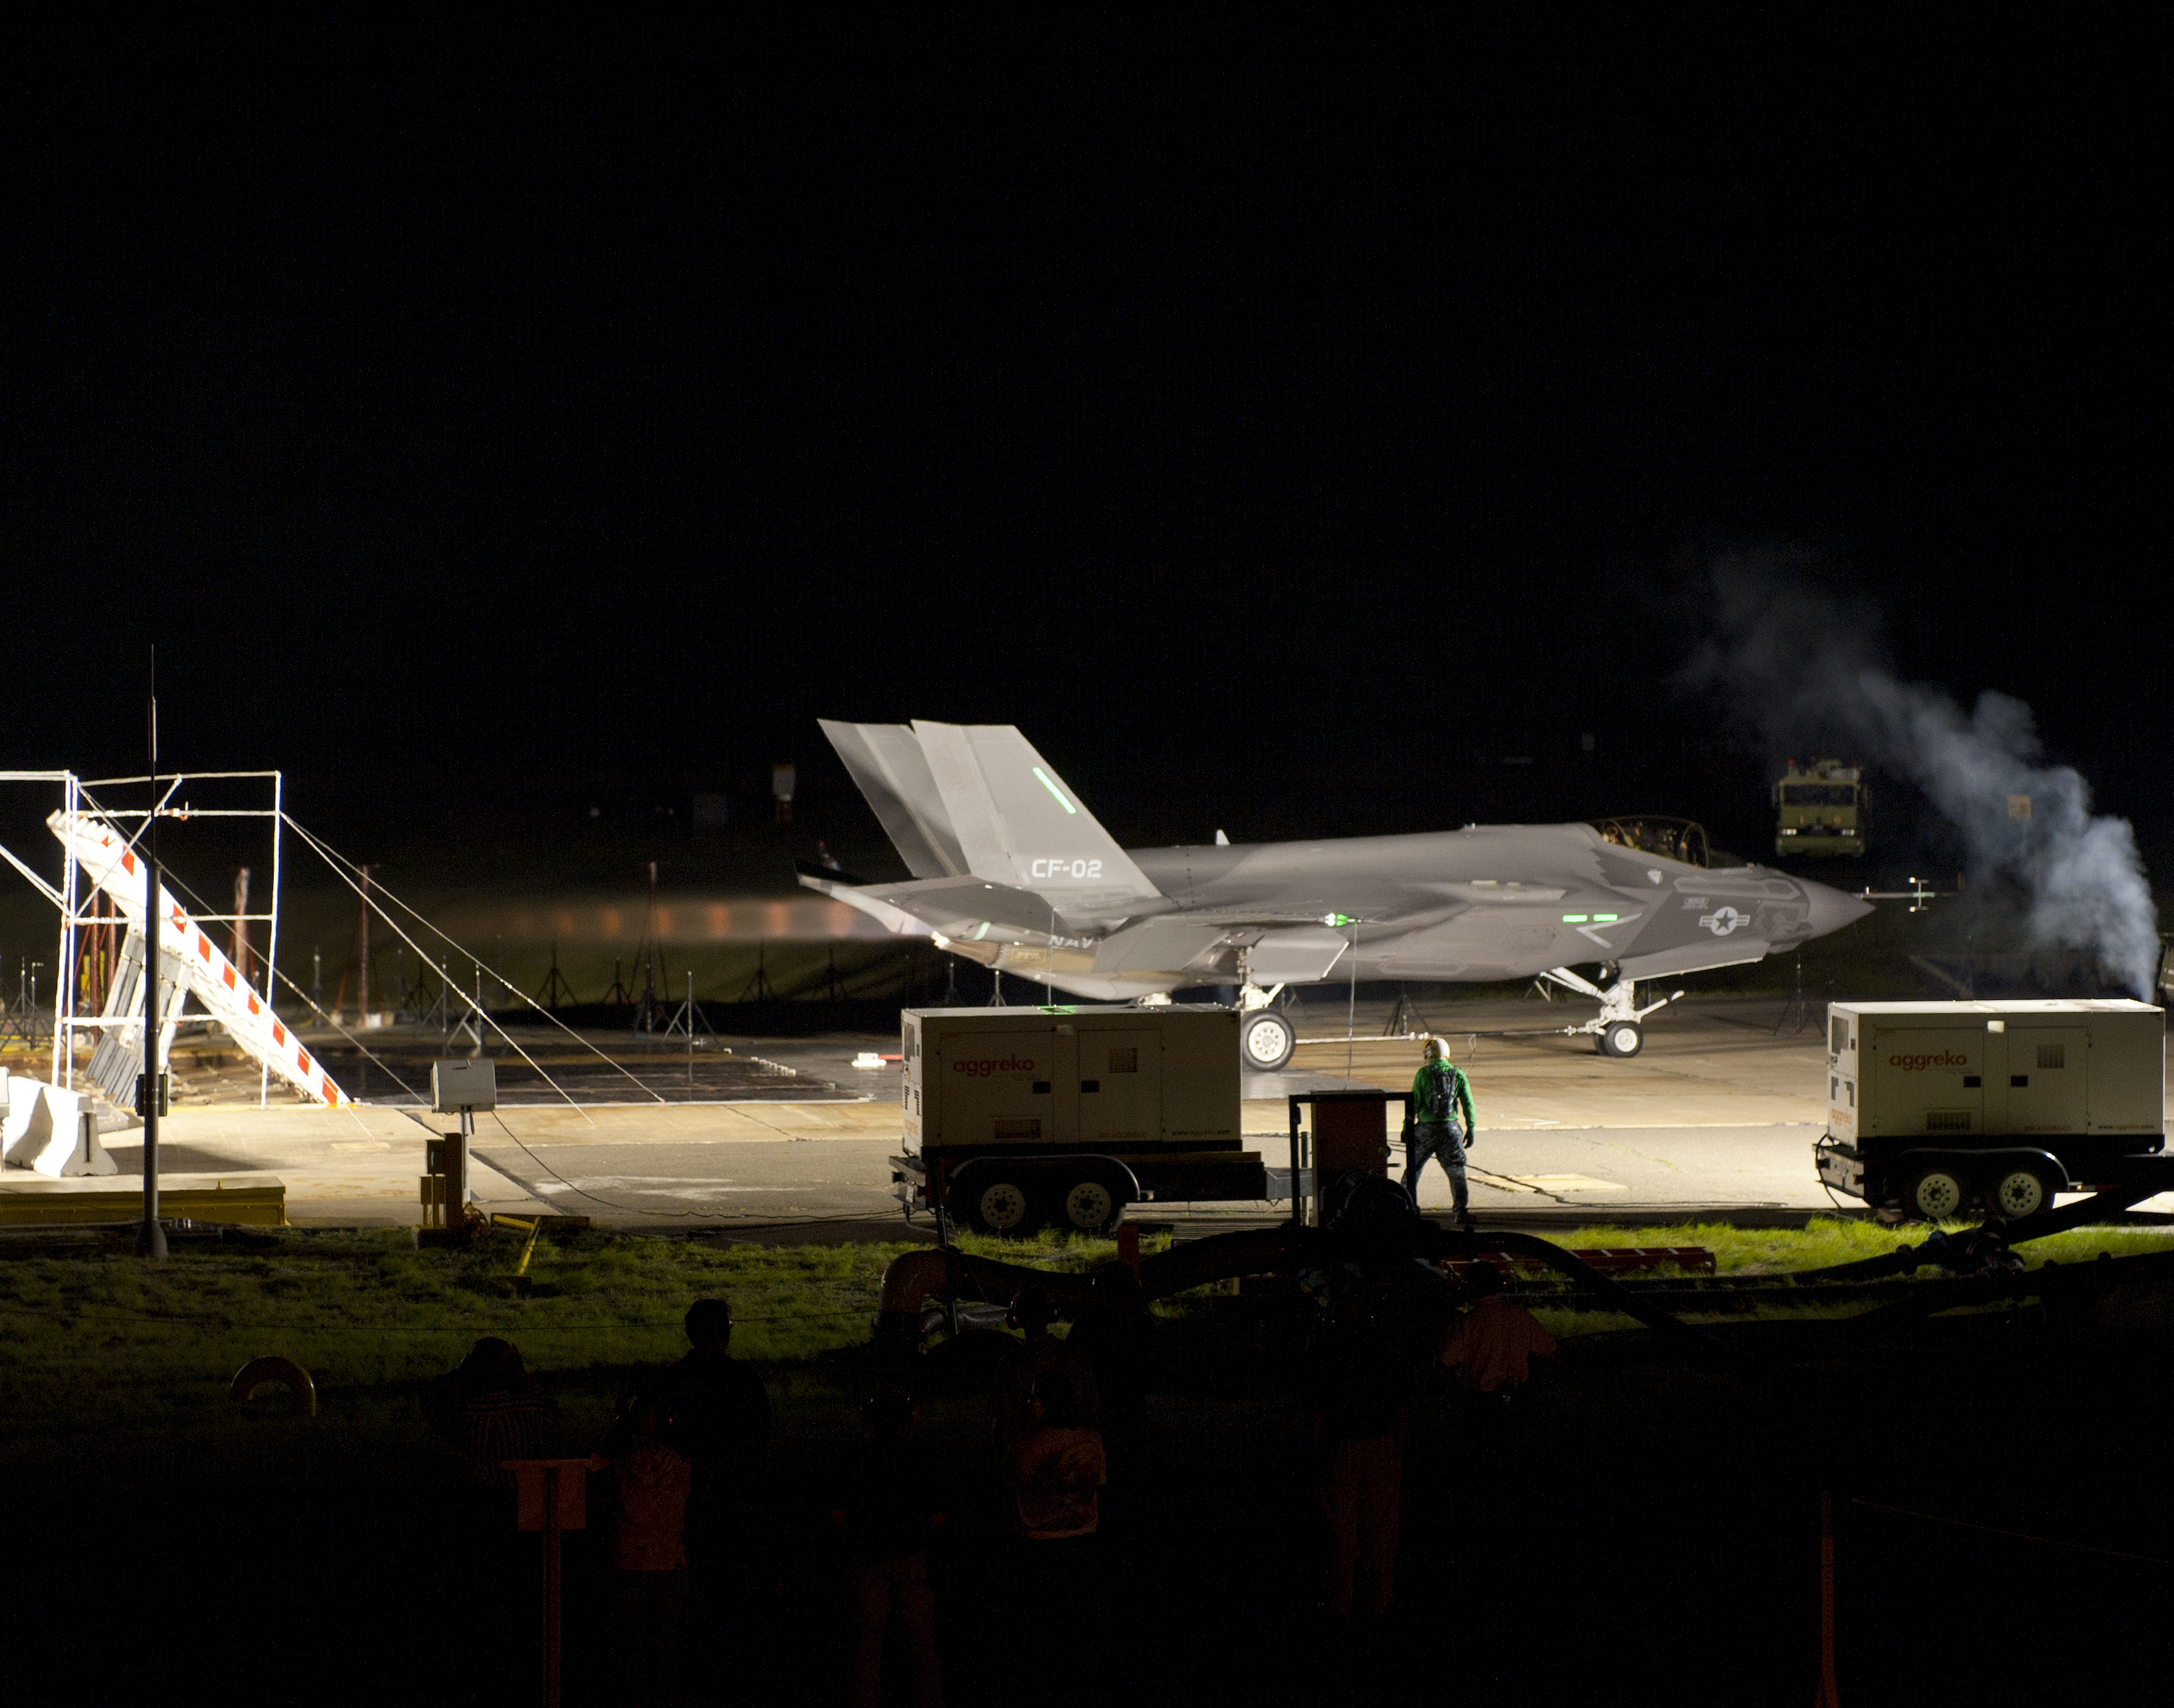 Az F-35C valószínűleg túléli a kurtításokat <br>(fotó: globalnewspointer.net)